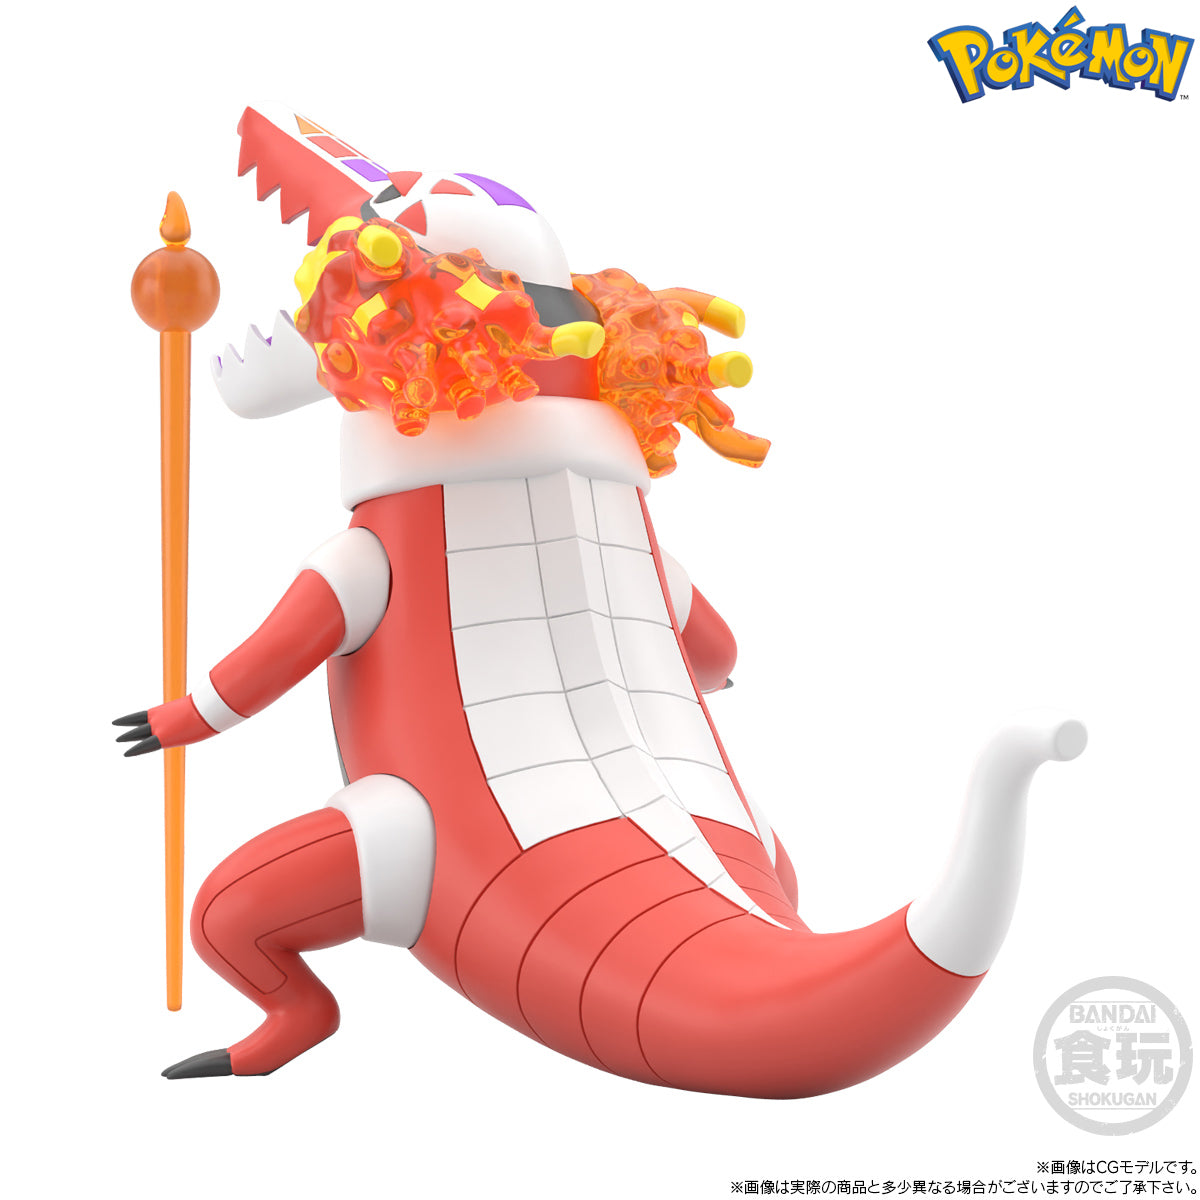 Bandai - Shokugan - Pokemon Scale World Galar Region - Nemona &amp; Skeledirge &amp; Pawmot - Marvelous Toys